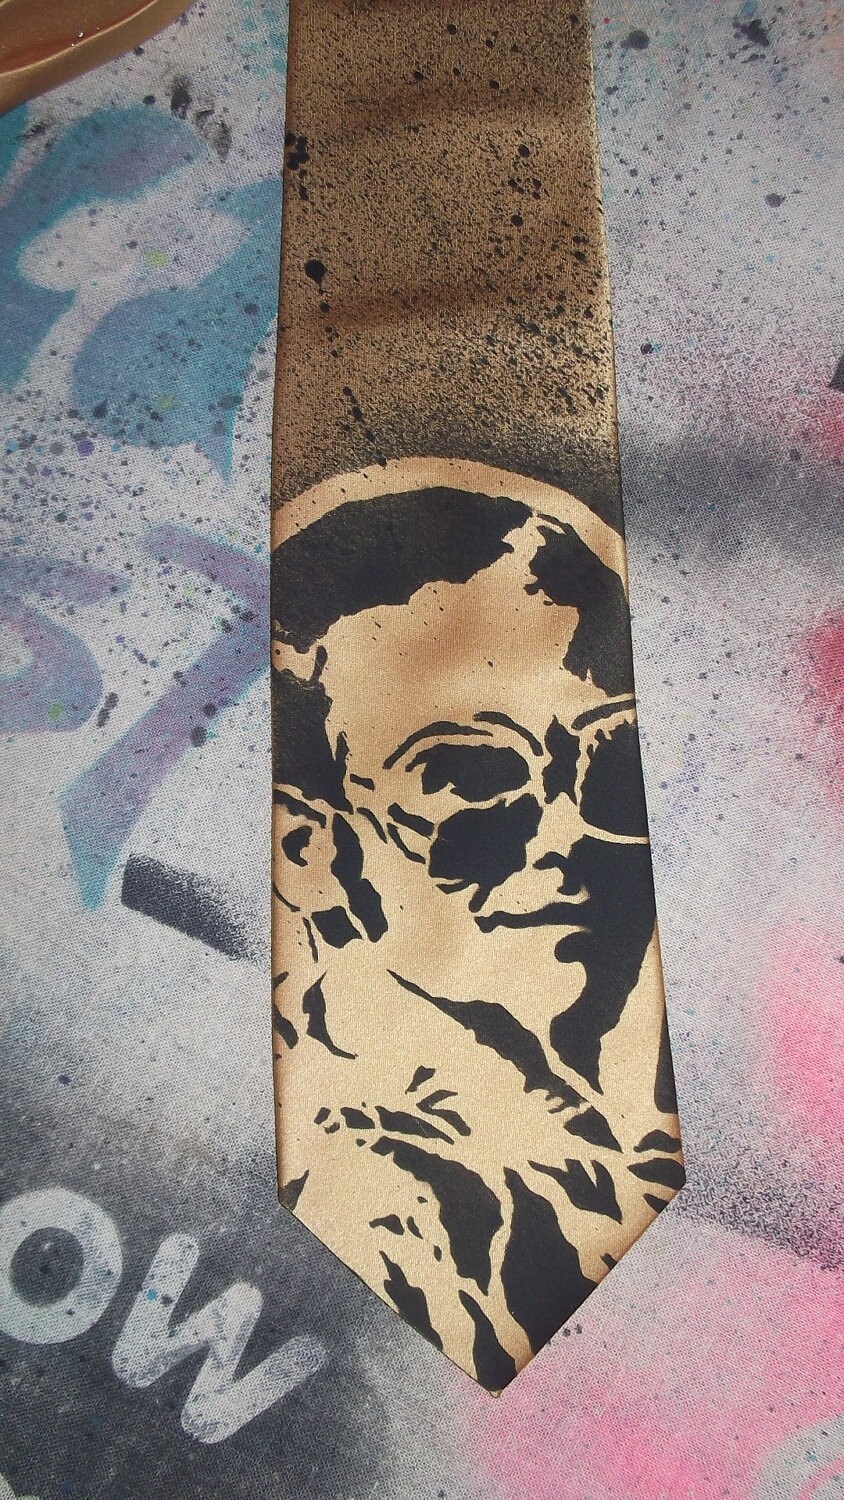 Elton John Stencil